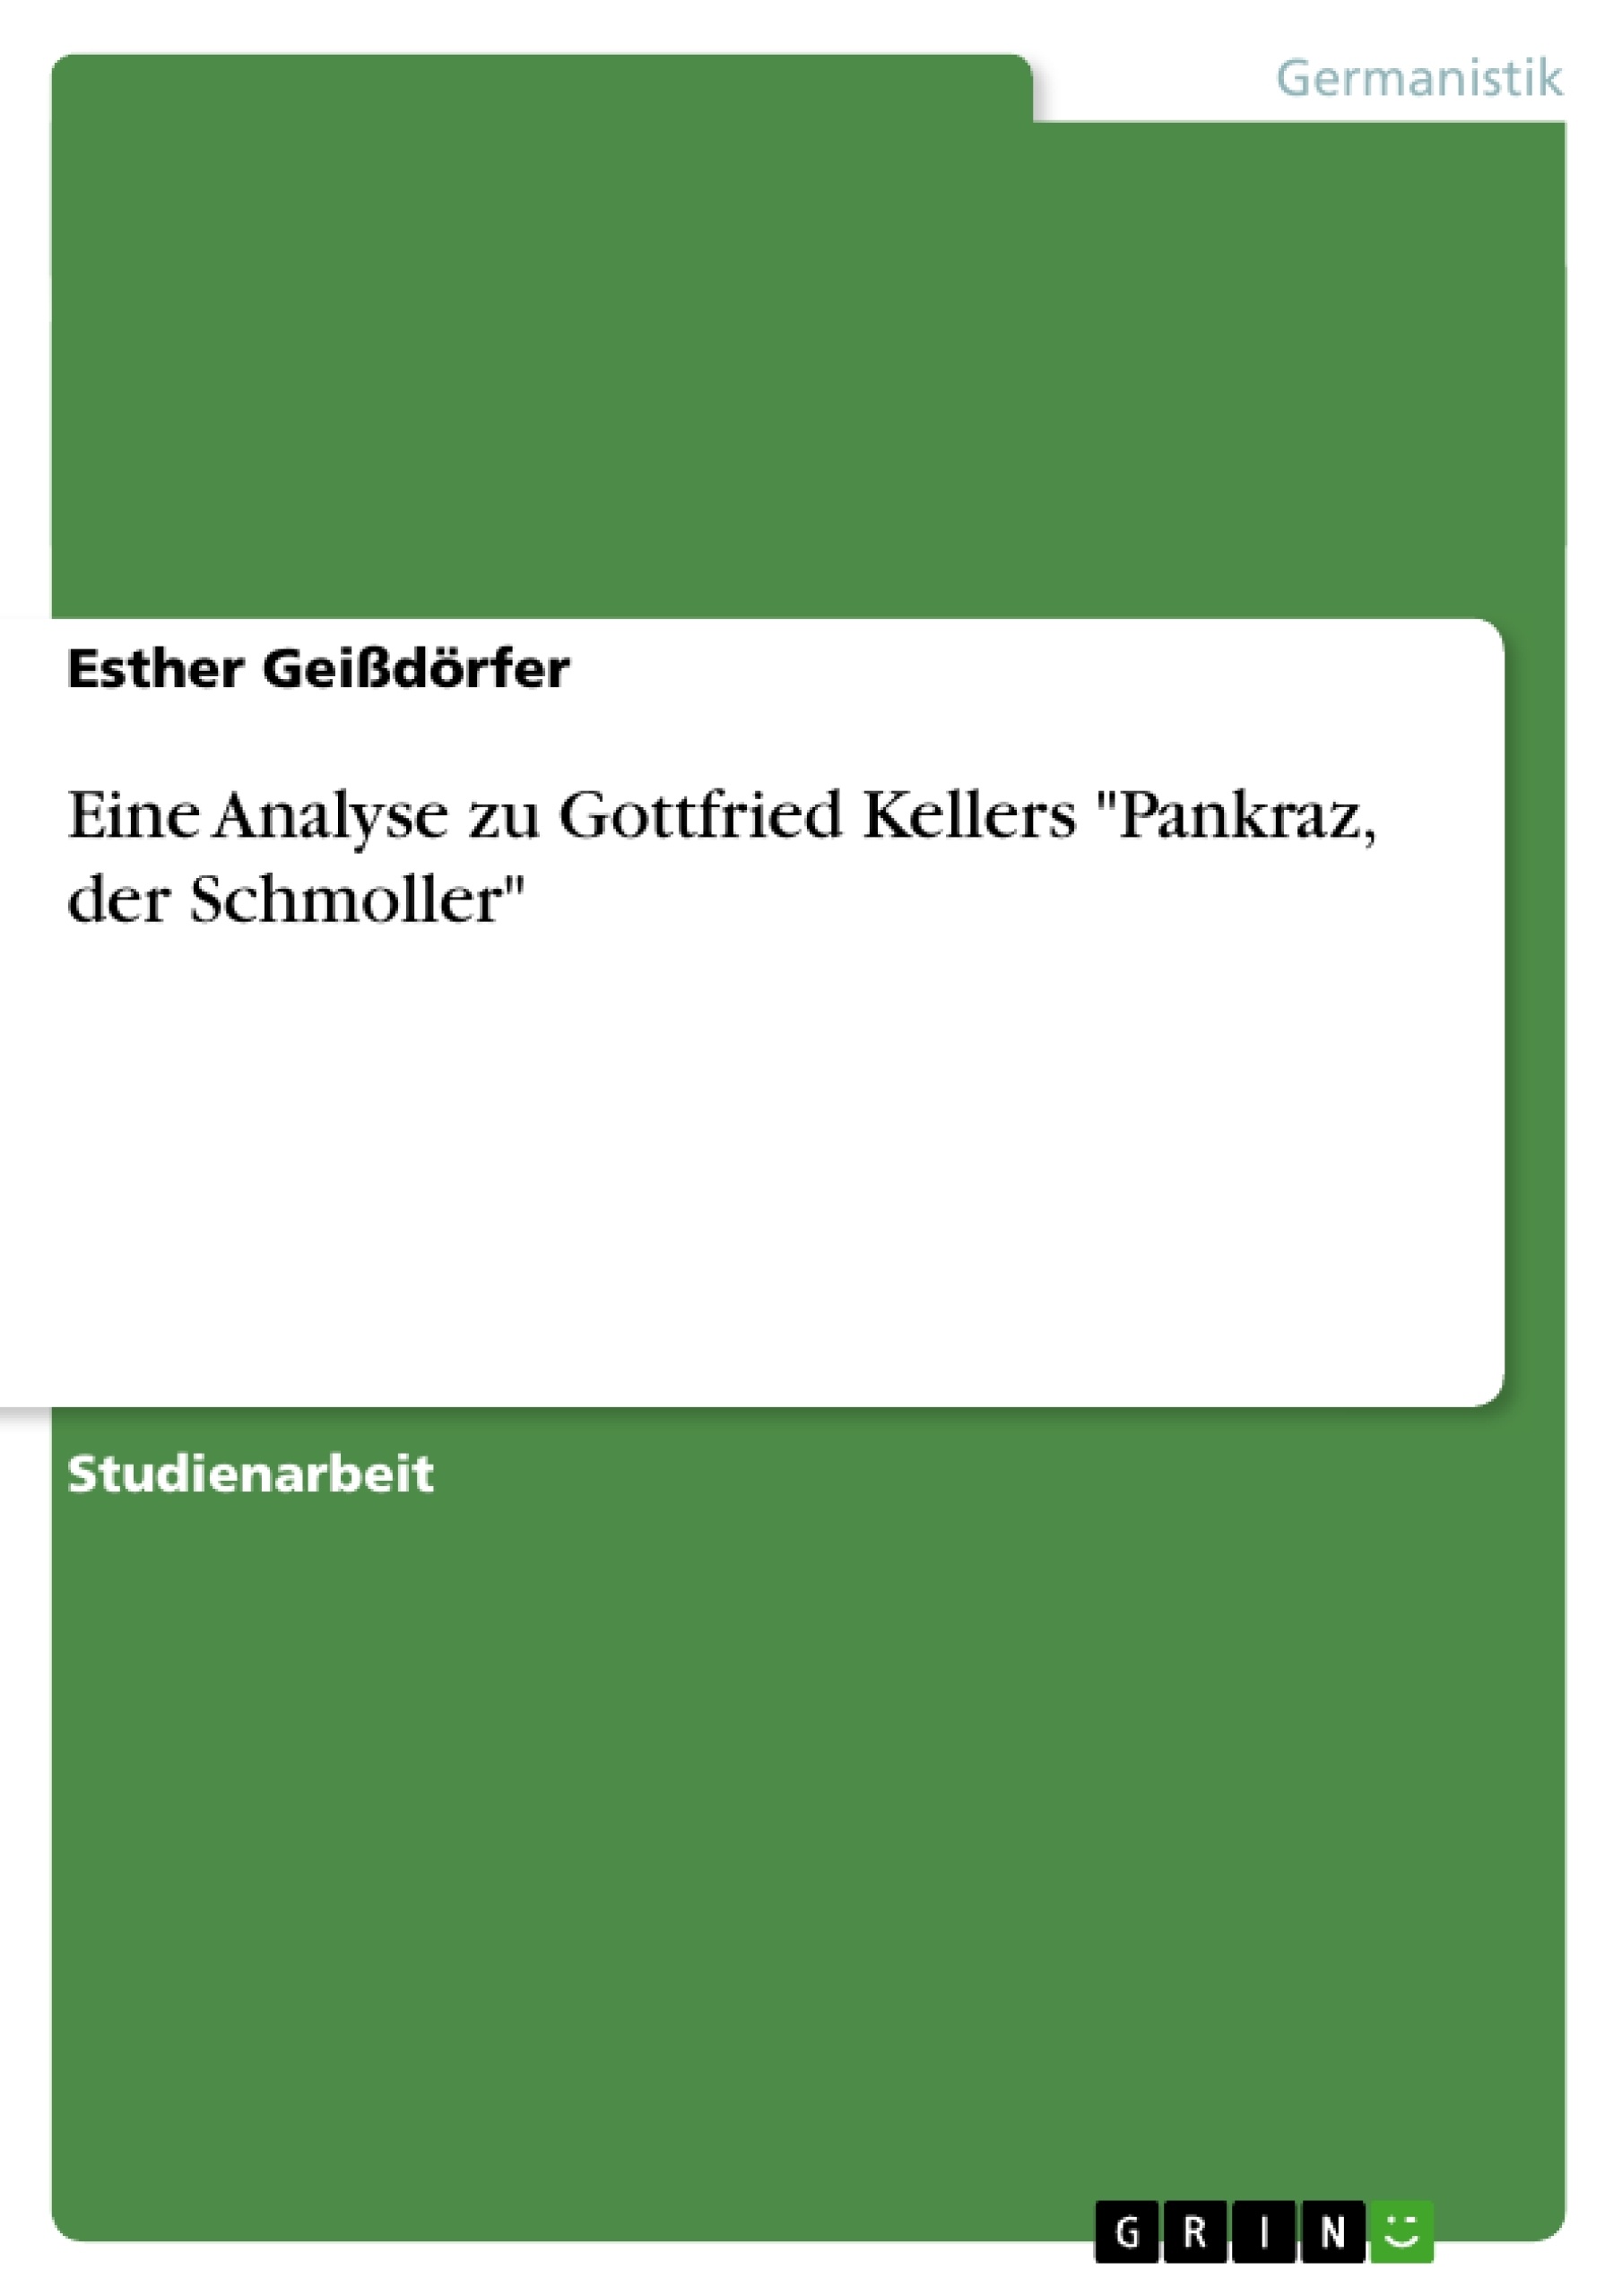 Title: Eine Analyse zu Gottfried Kellers "Pankraz, der Schmoller"